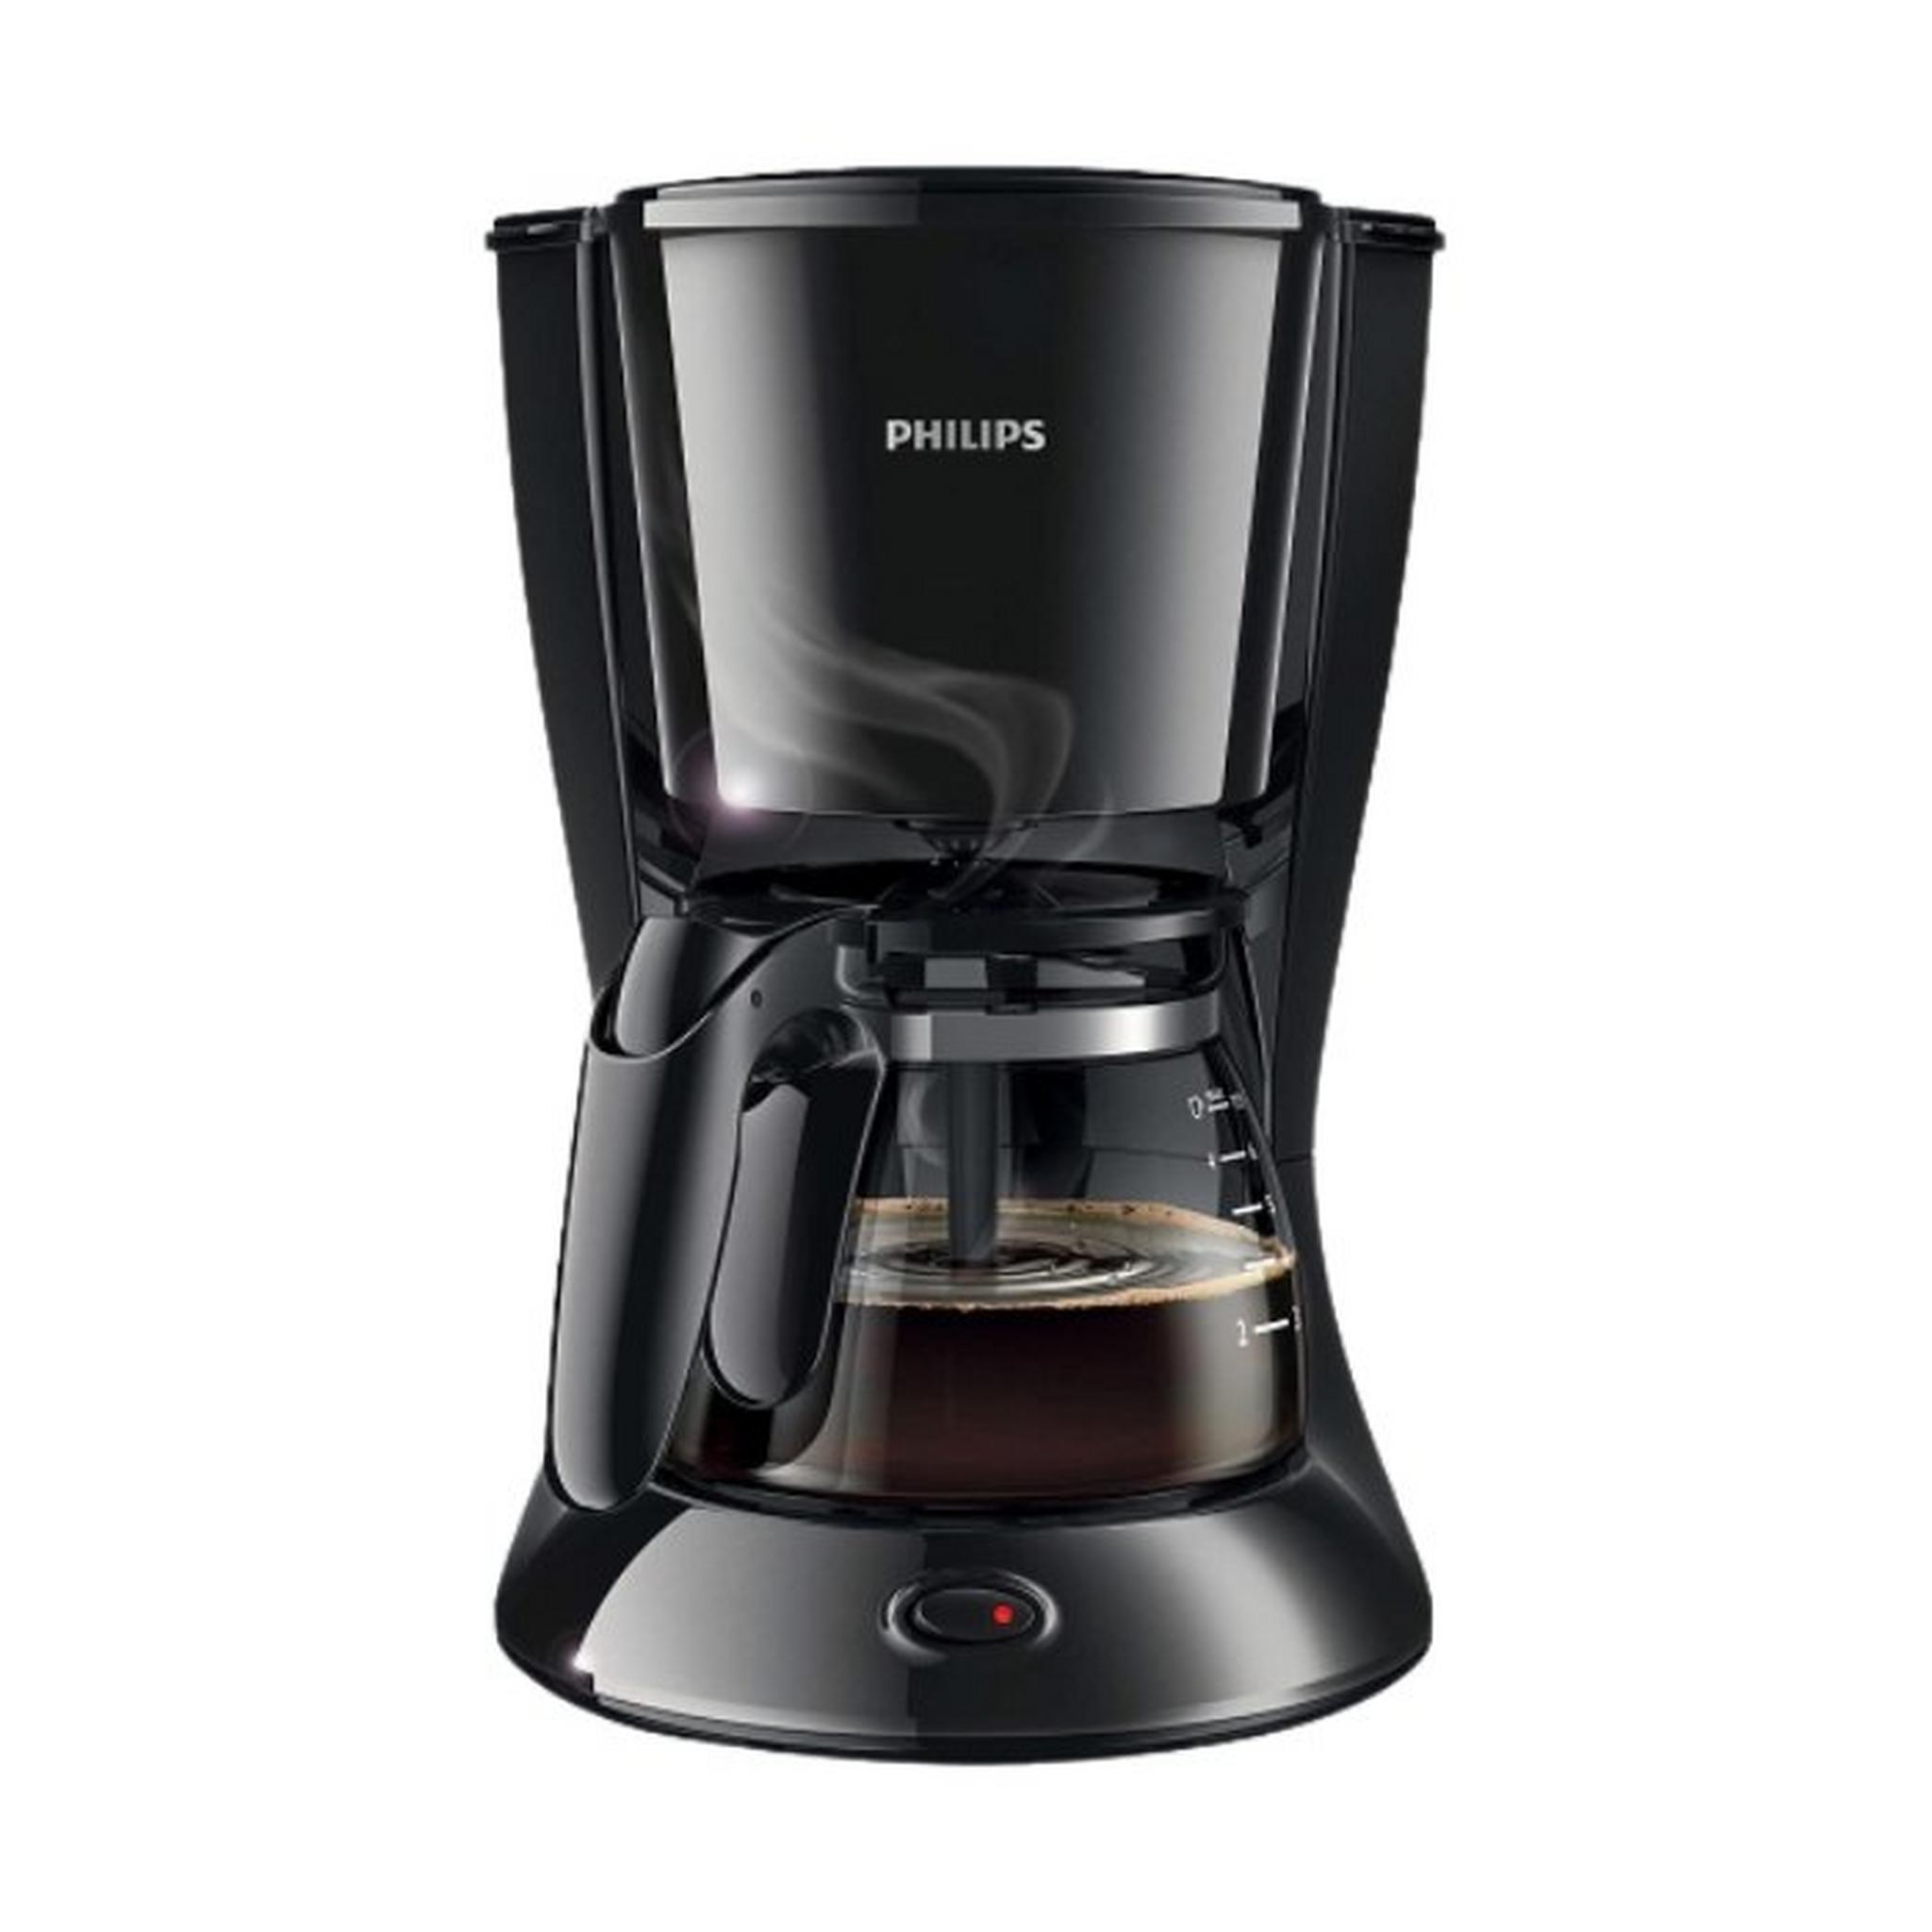 Philips Drip Coffee Maker, 750W, 0.6L, HD7432/20 – Black